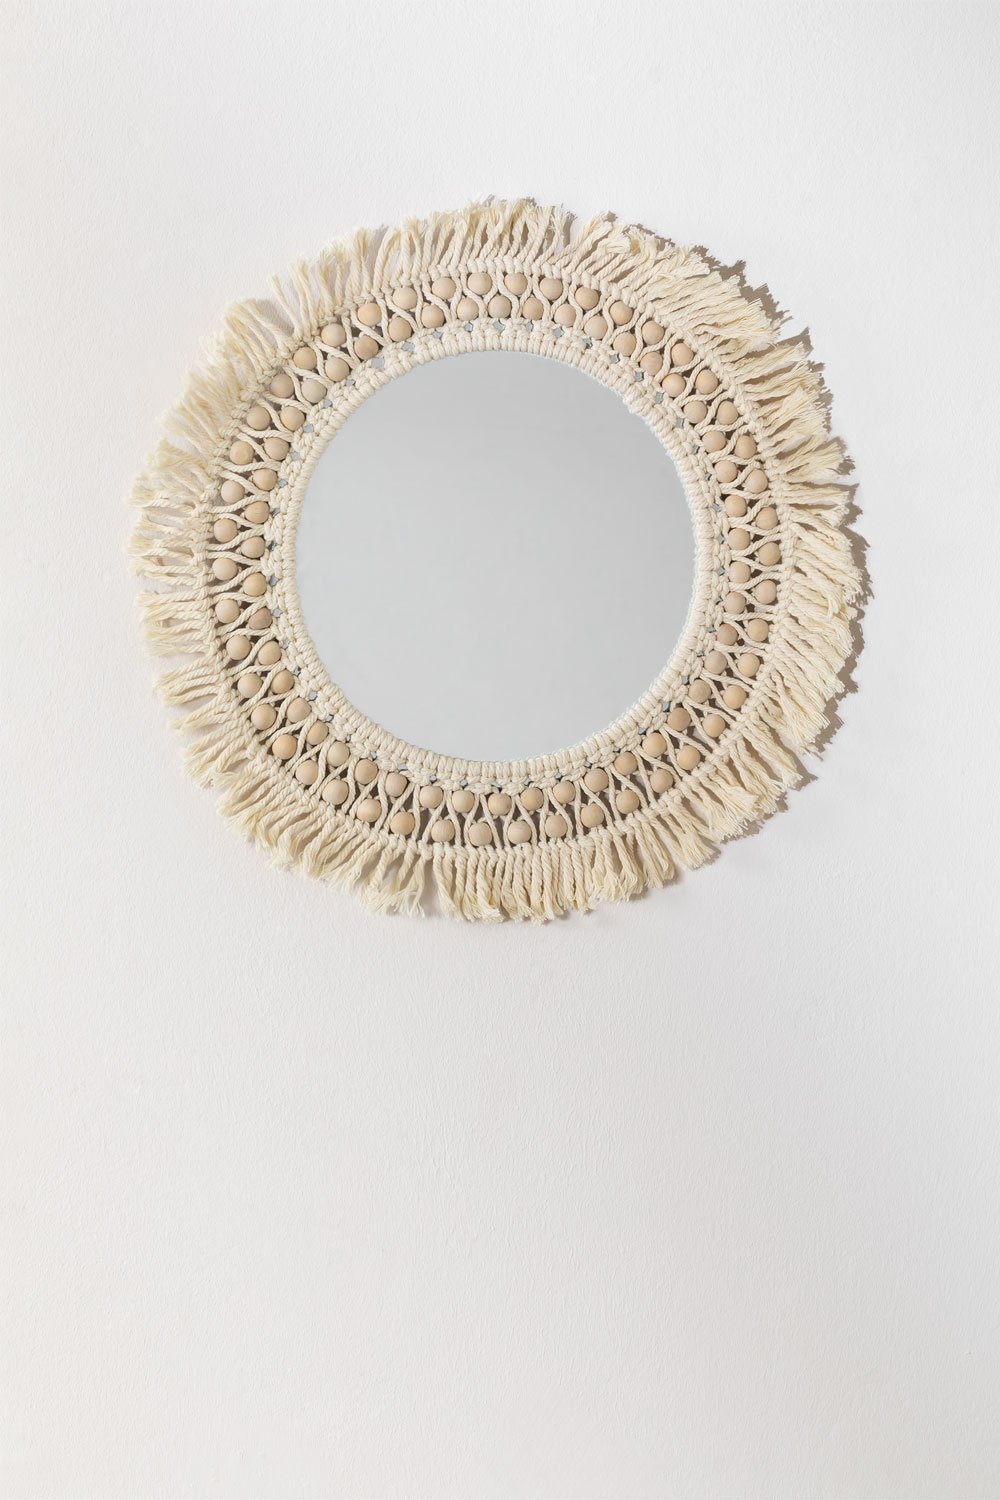 Specchio rotondo da parete in macramè (Ø50 cm) Jarn, immagine della galleria 1